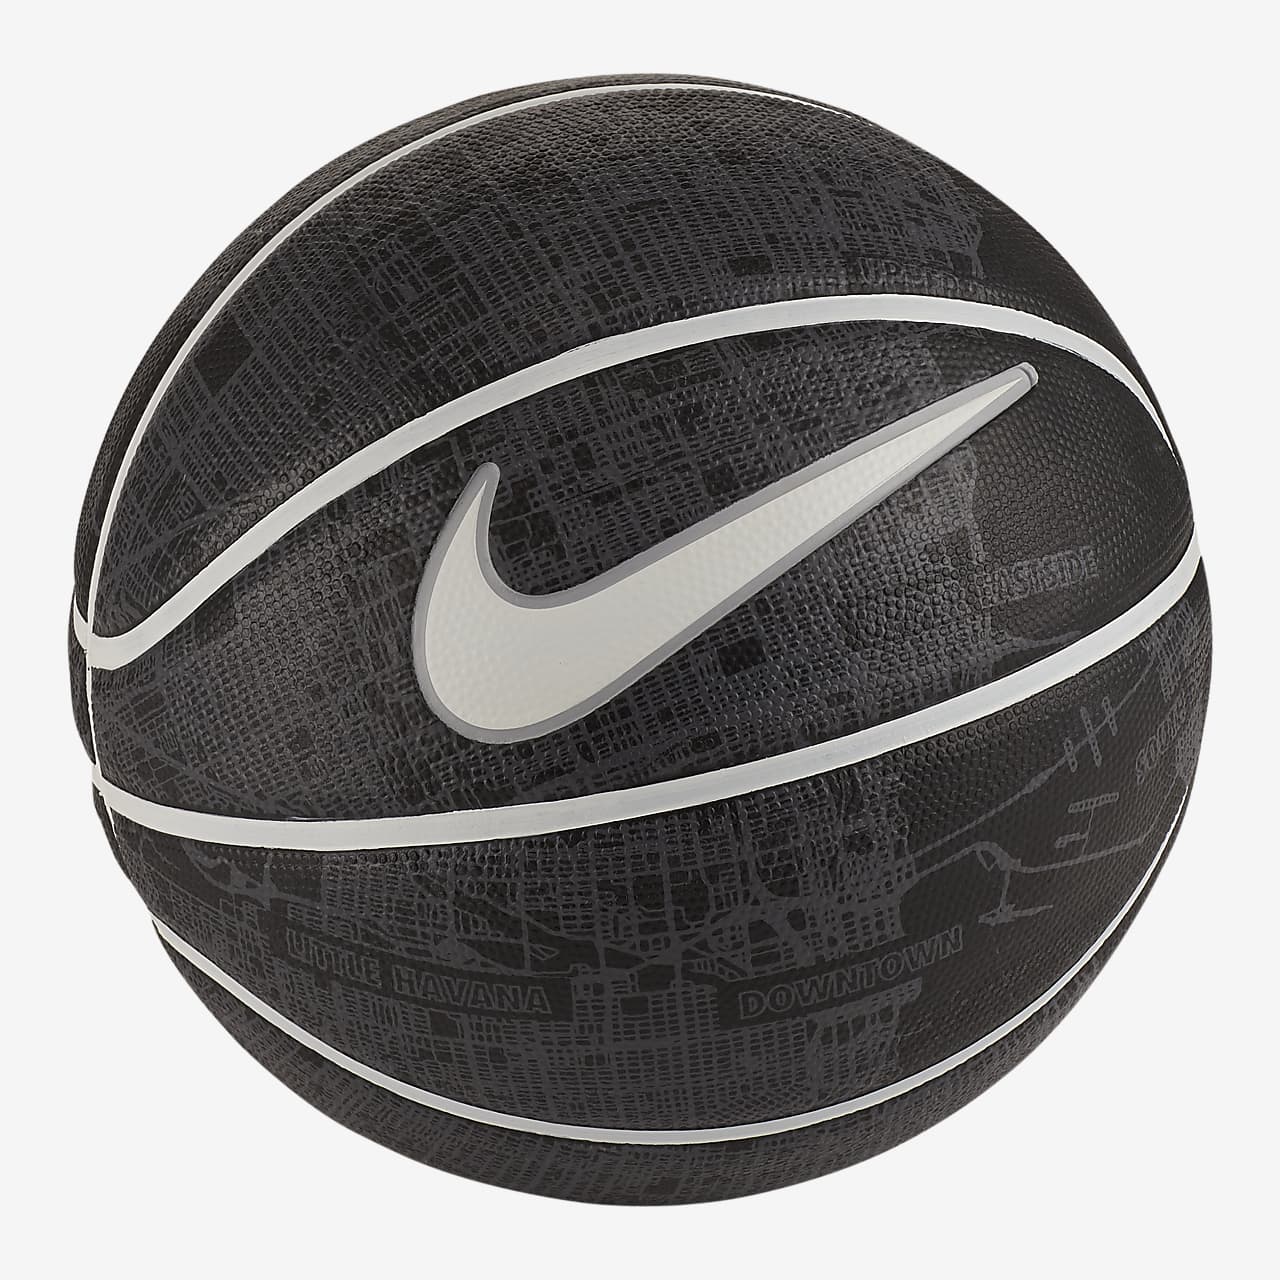 Nike Dominate 8P Miami Basketball (Size 